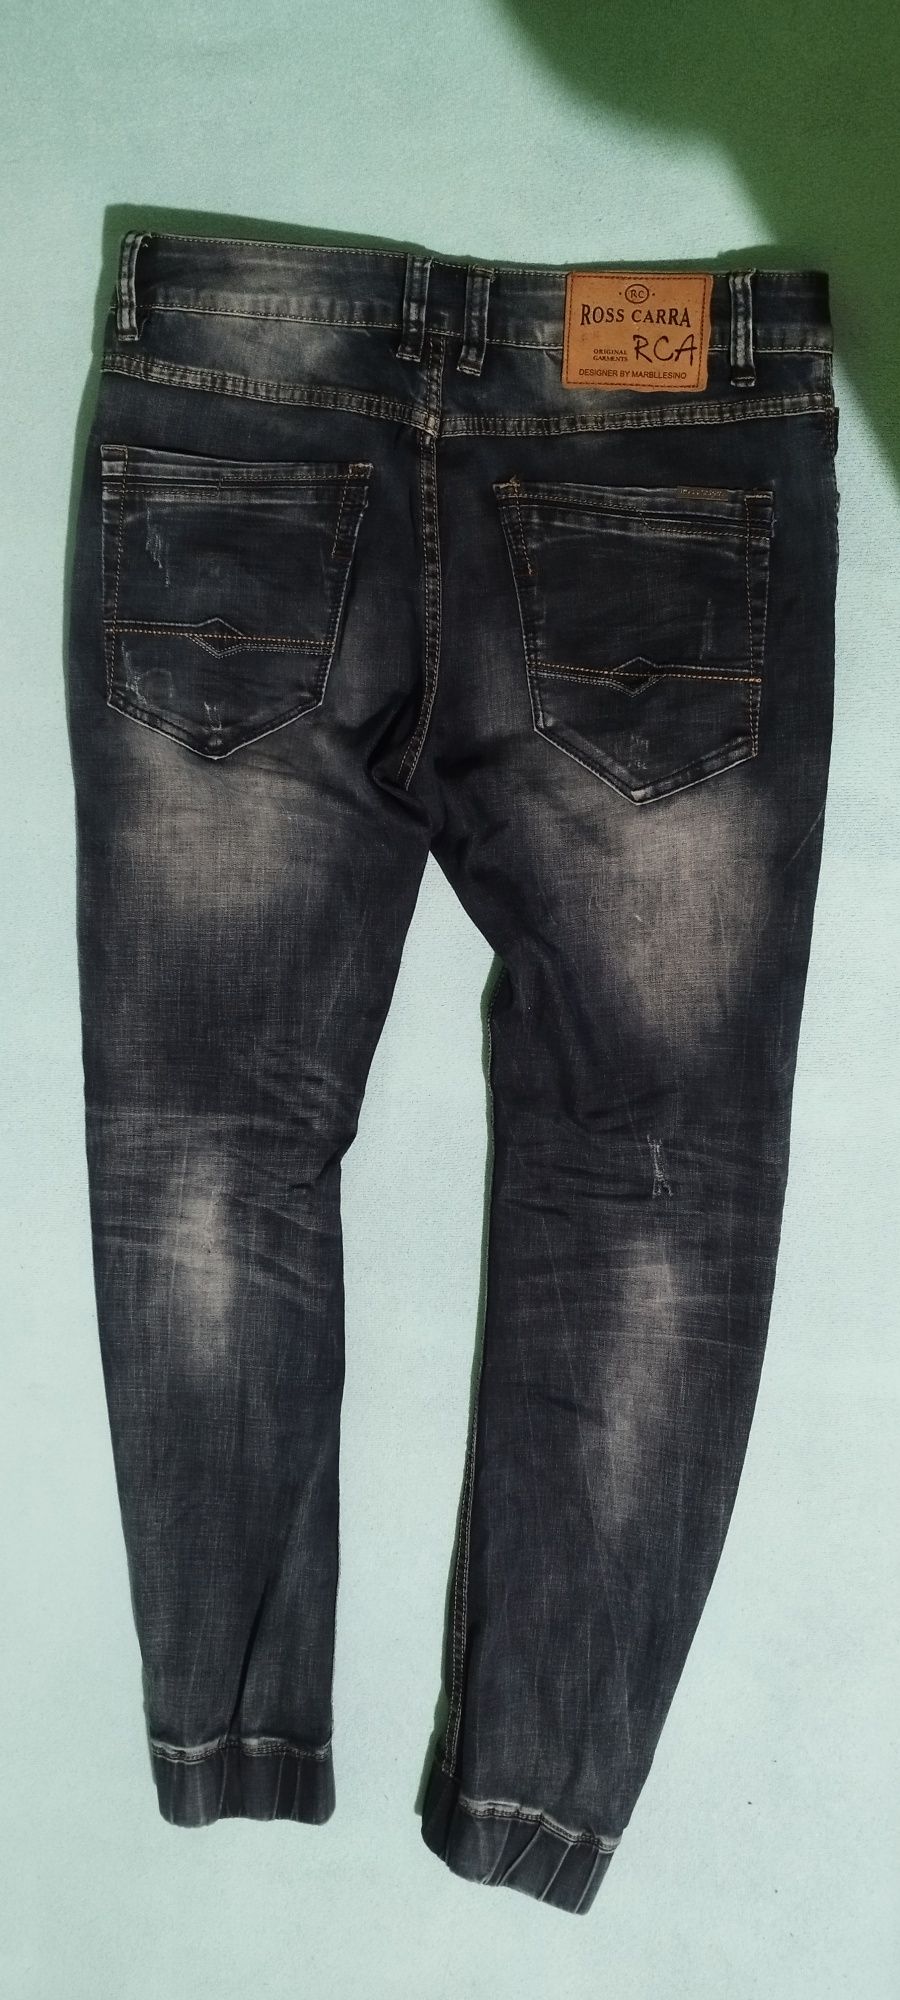 Spodnie męskie jeansowe joggert